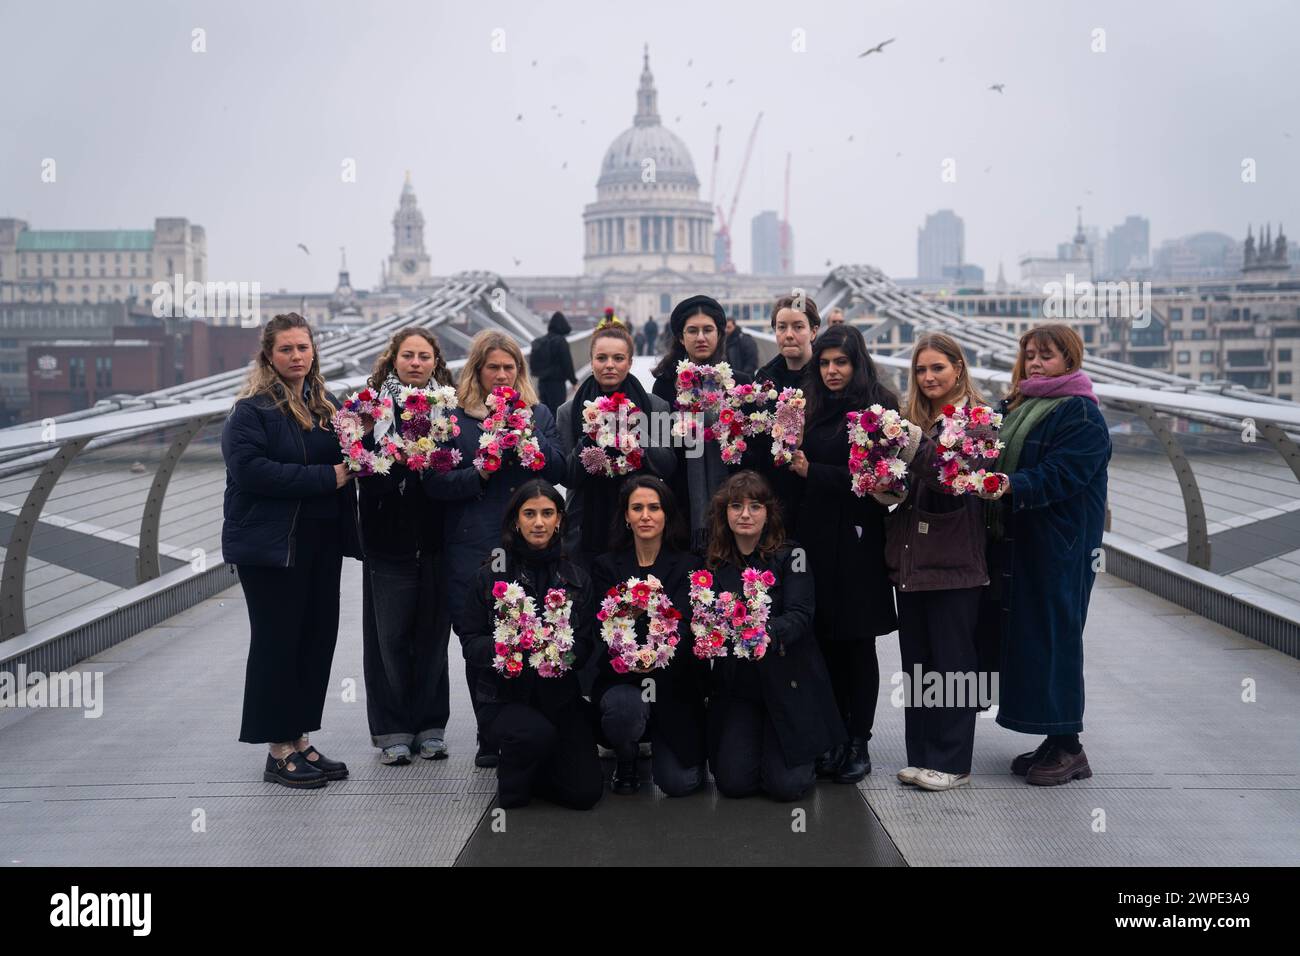 Mitglieder einer Koalition internationaler Hilfsorganisationen veranstalten eine Demonstration zum Internationalen Frauentag auf der Millennium Bridge, London, in der sie zu einem sofortigen und dauerhaften Waffenstillstand in Gaza aufrufen. Bilddatum: Donnerstag, 7. März 2024. Stockfoto